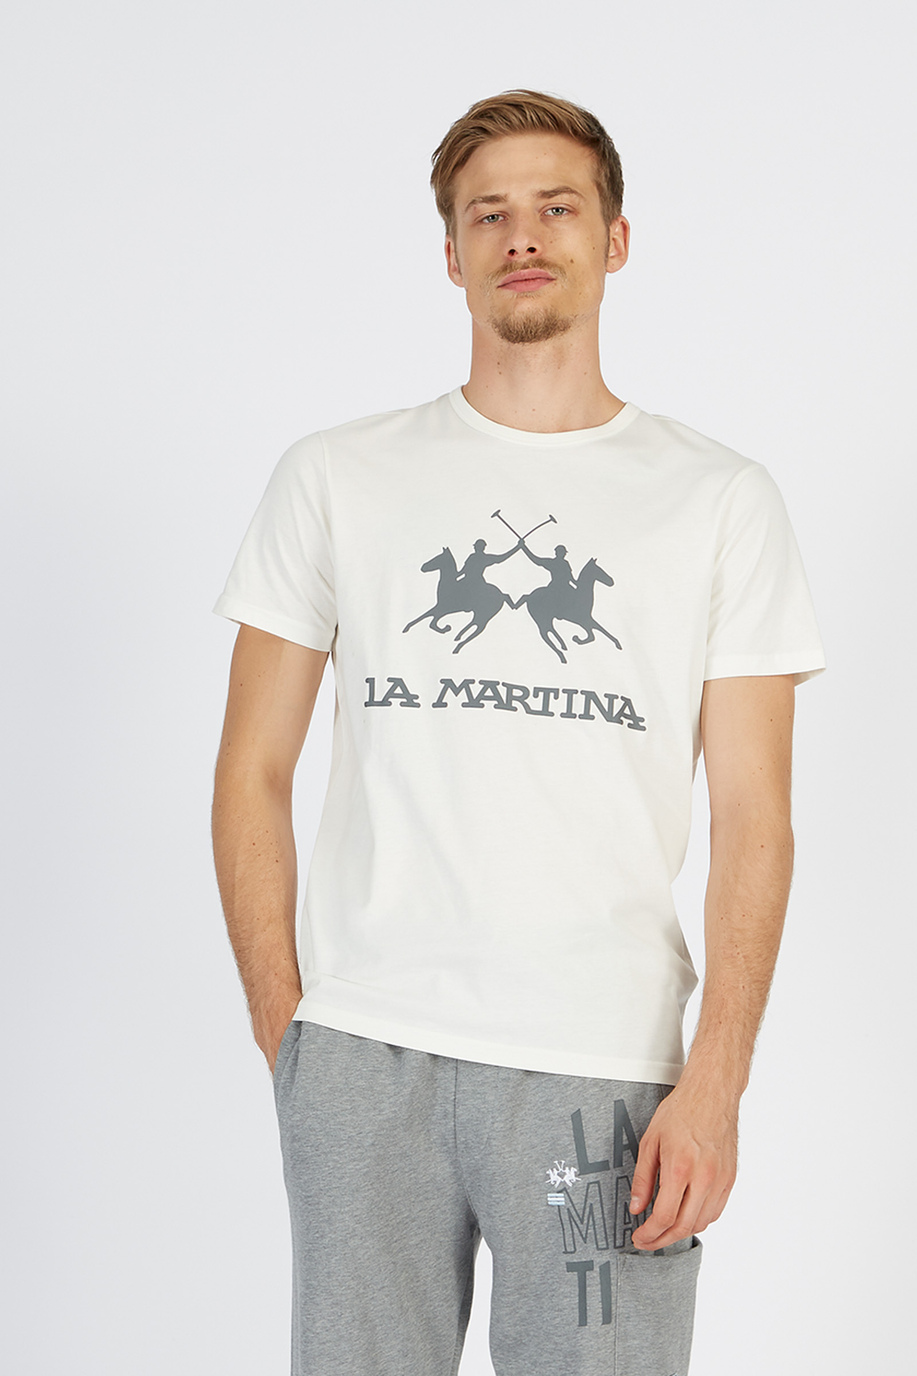 Camiseta hombre corte regular | La Martina - Official Online Shop